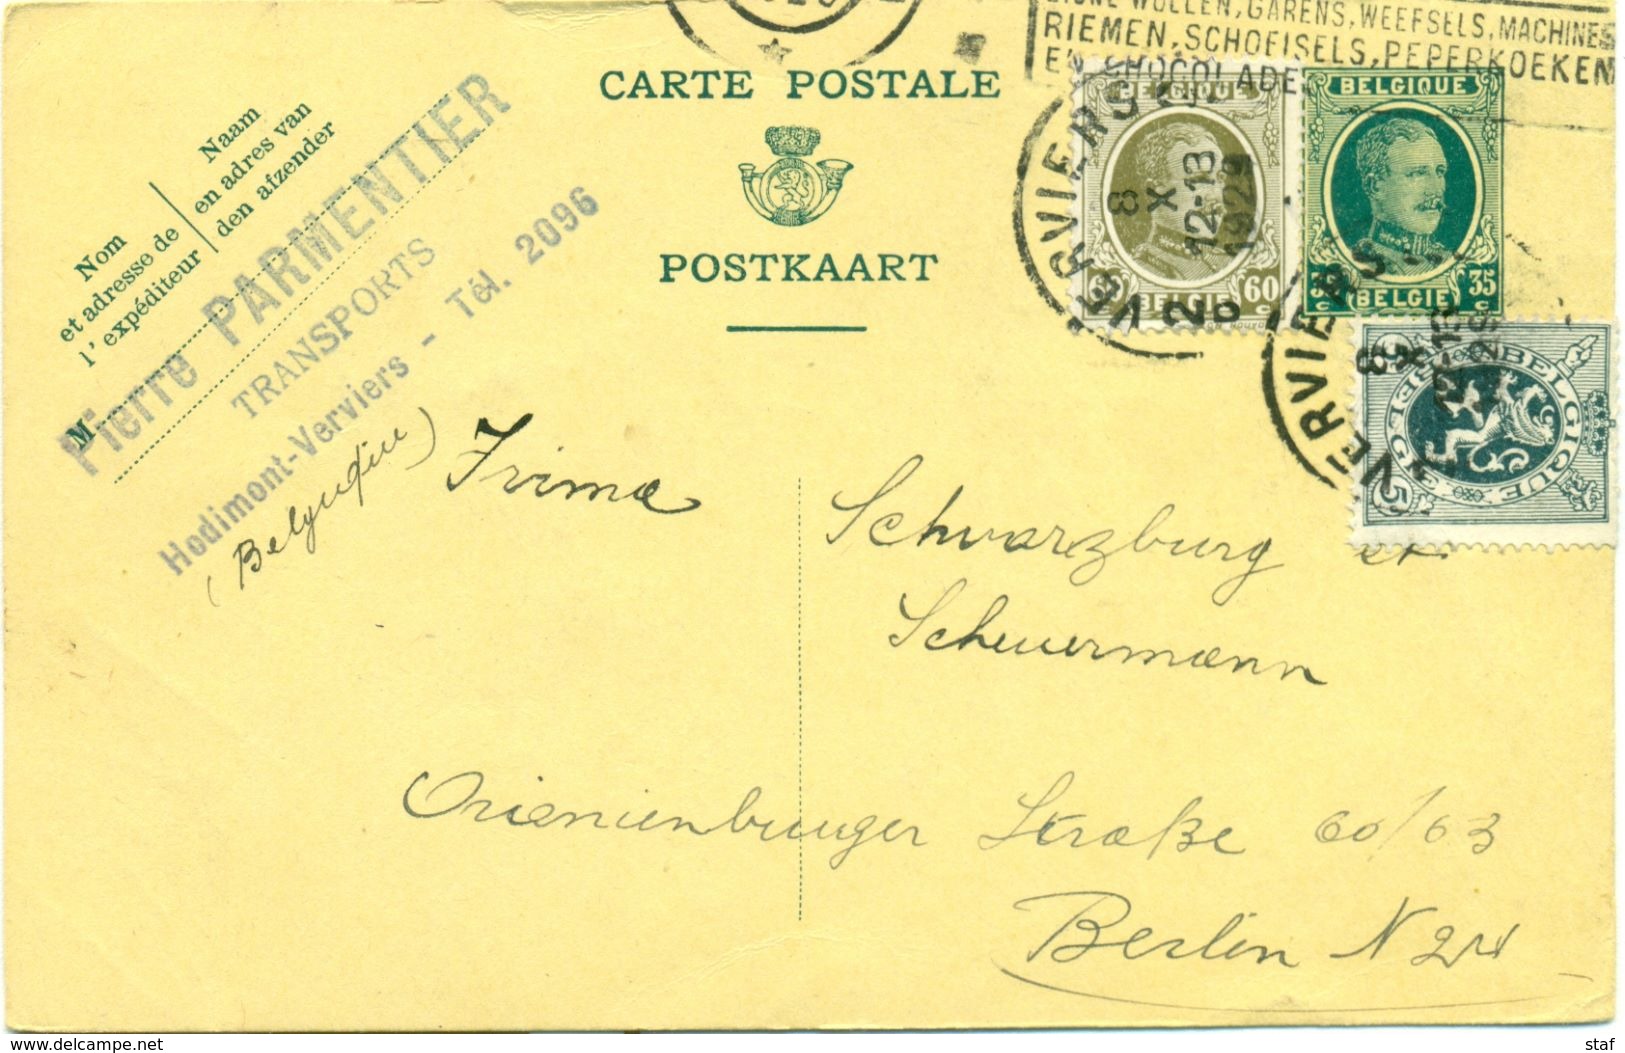 Carte Postale De Pierre Parmentier Transports à Hodimont - Verviers : 1929 - Transporte